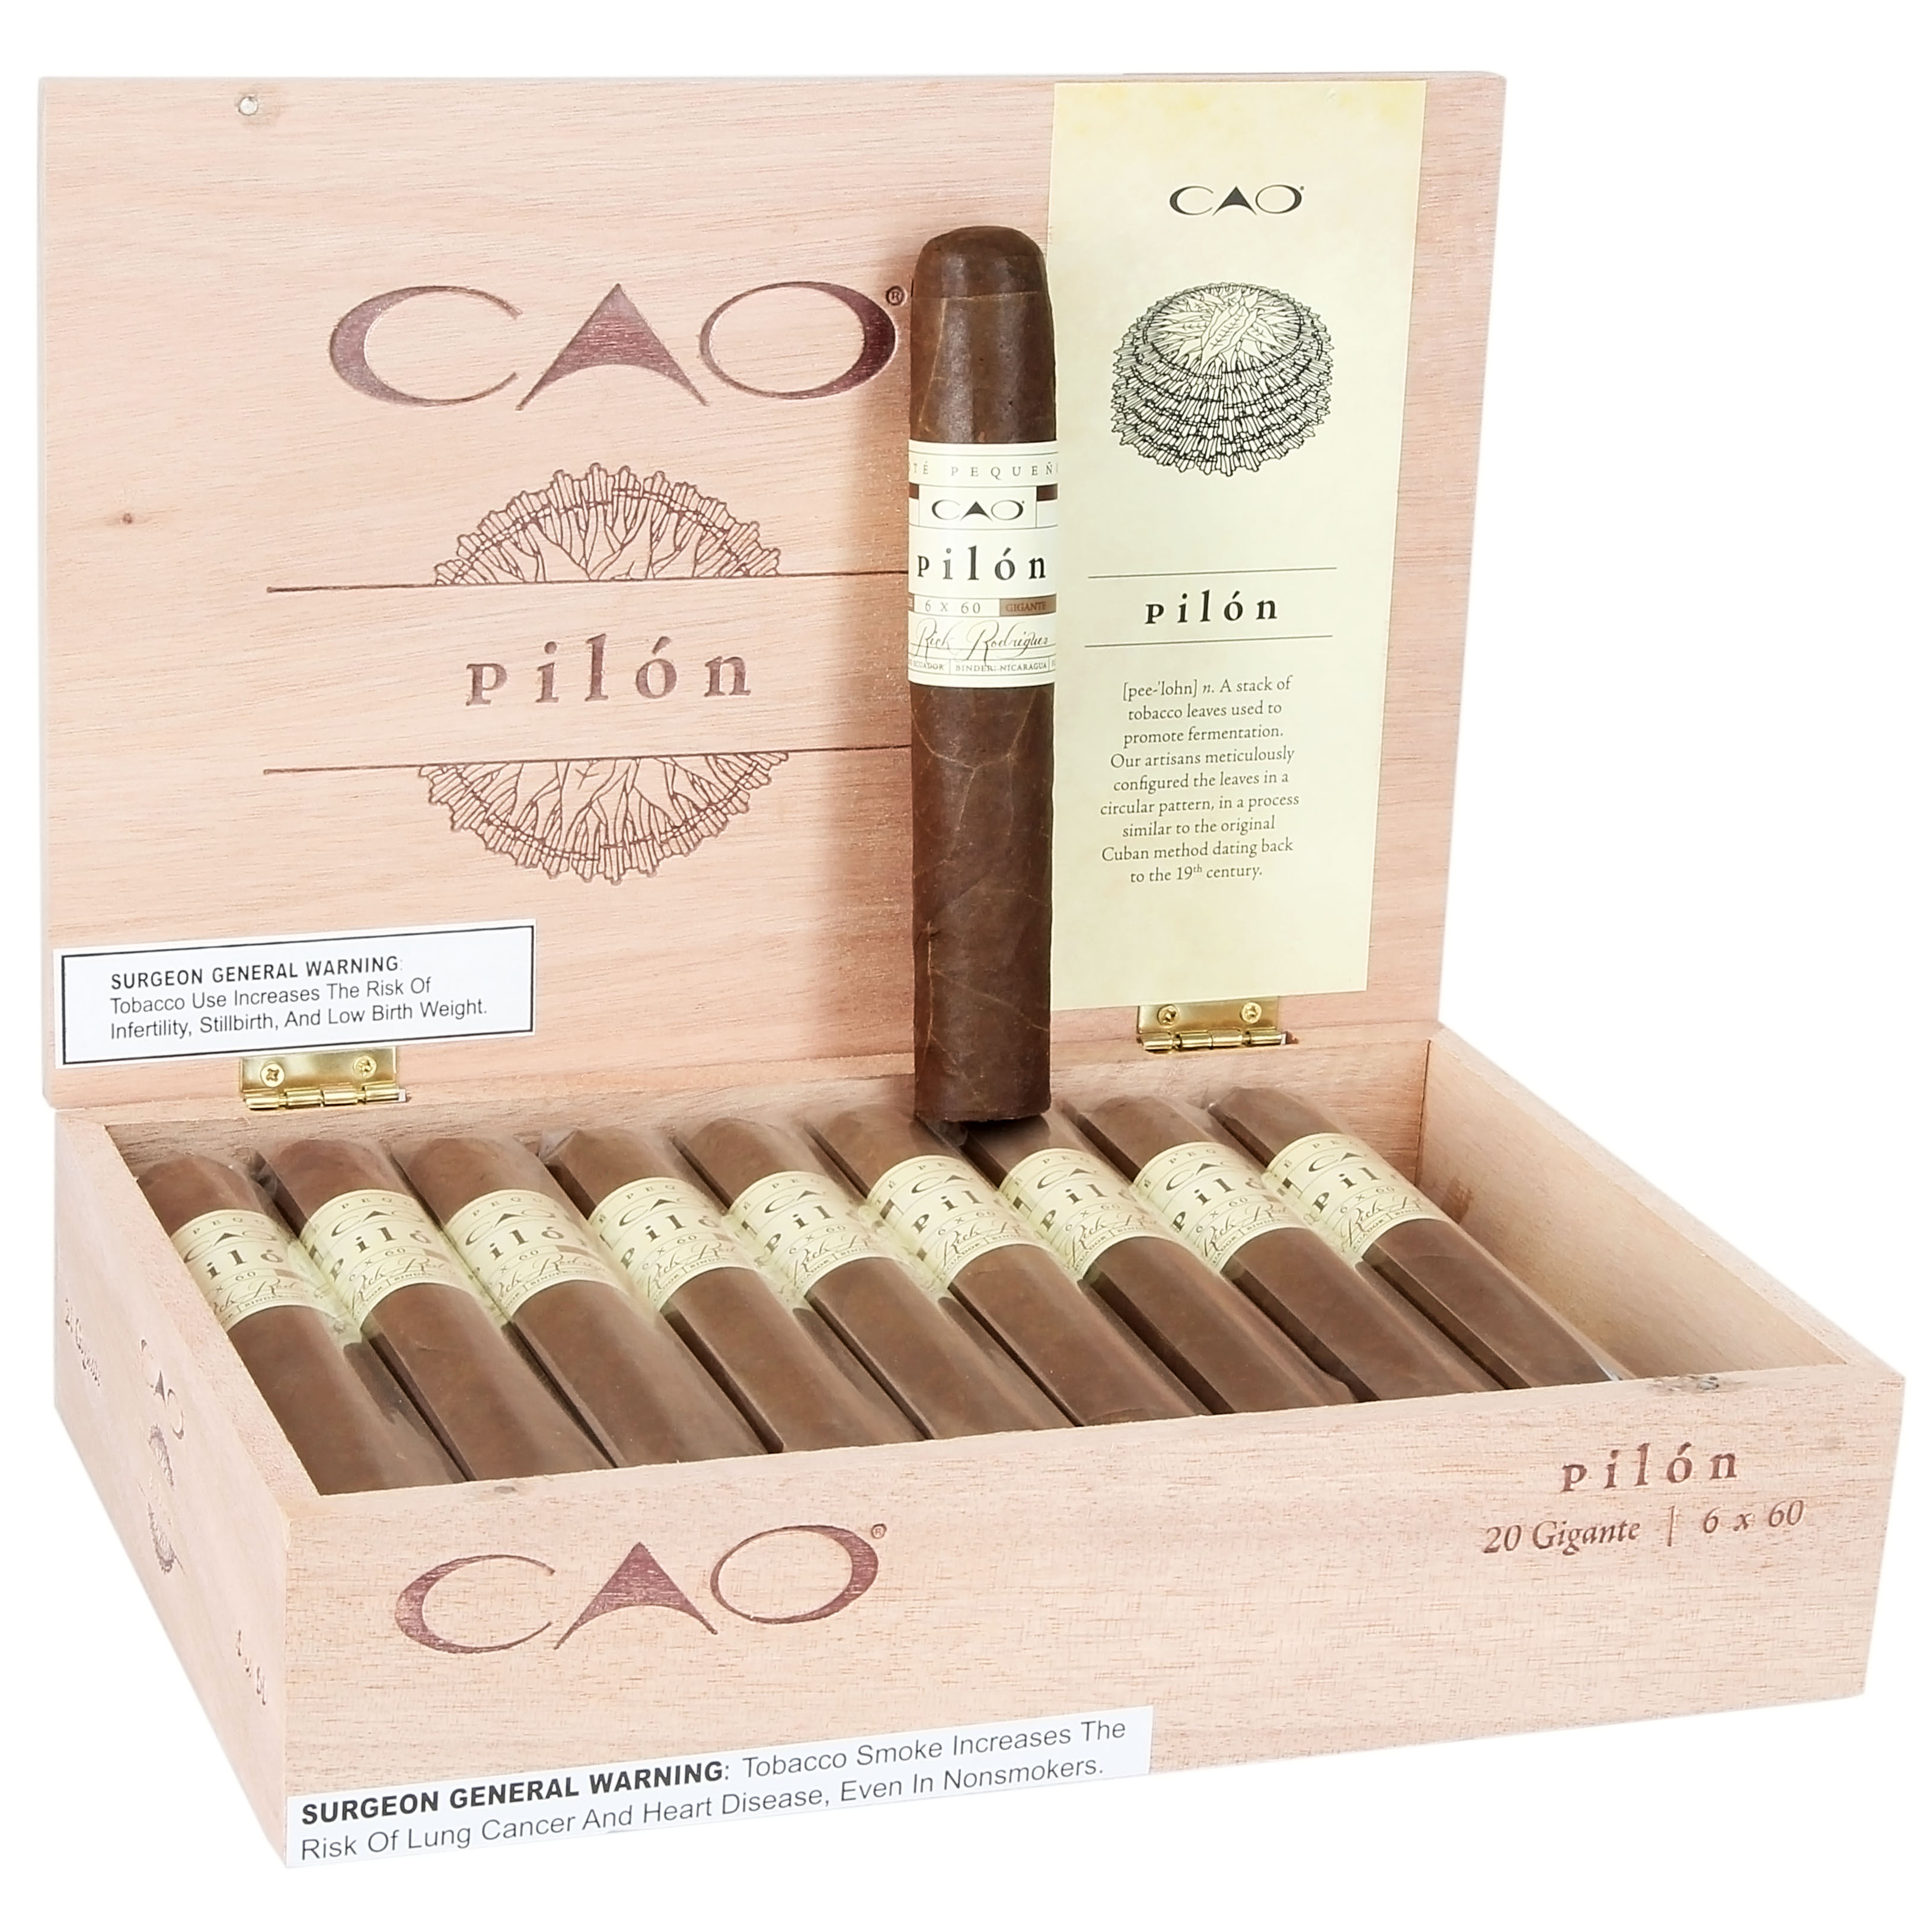 CAO Pilon cigars